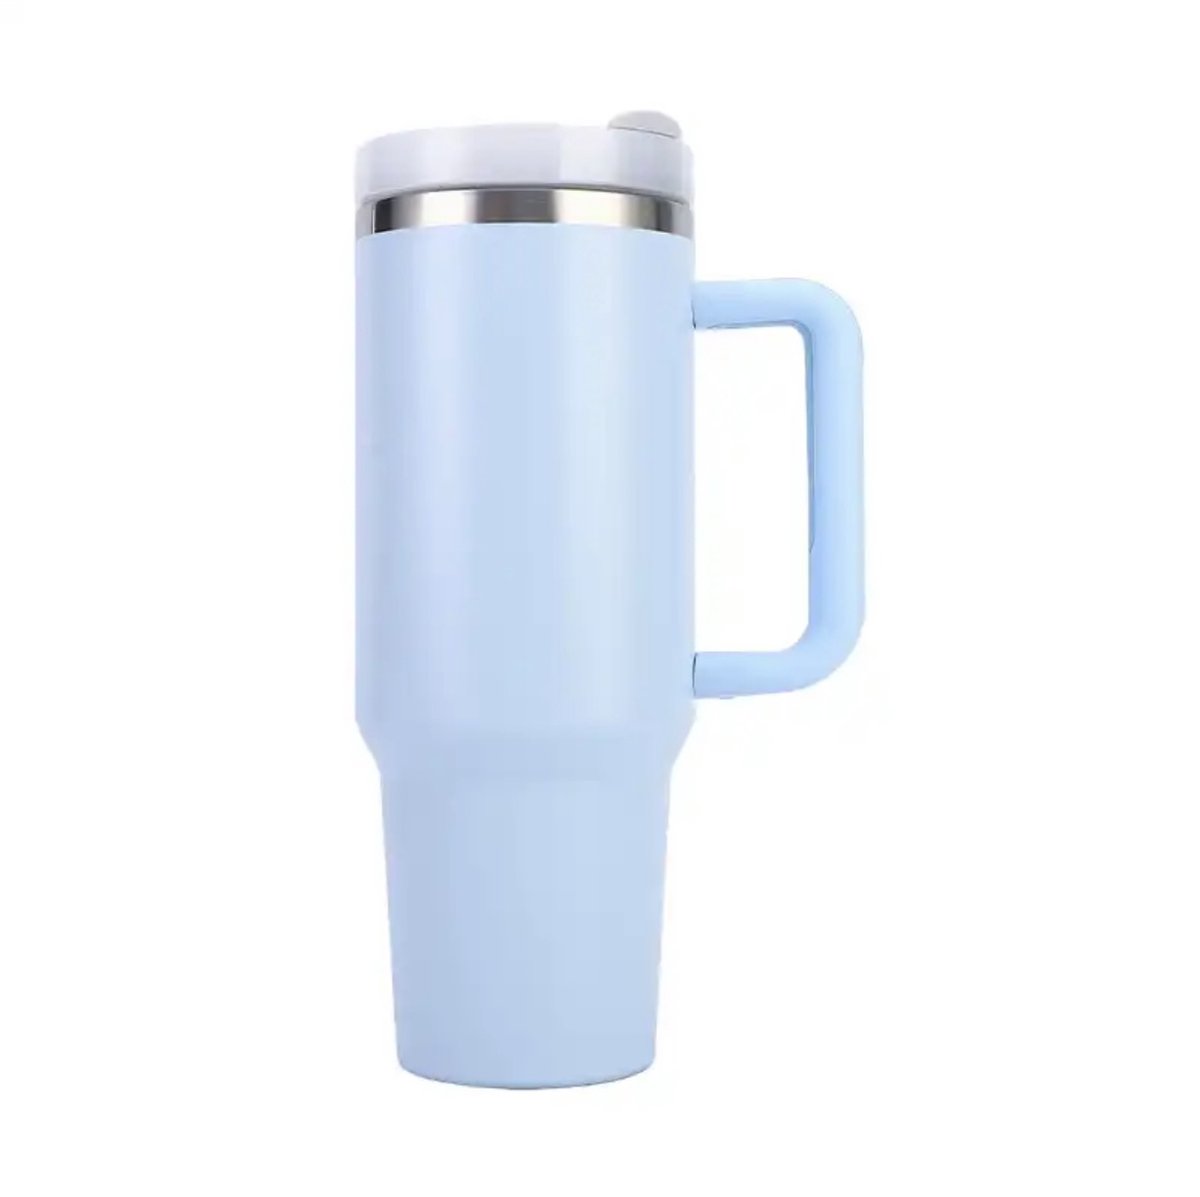 Drinkbeker - Licht Blauw - 1200ML - Drinkfles - Waterfles - Bidon - Beker met deksel - Thermosbeker - Tumbler - Met Rietje Volwassenen - Kinderen - Thermosfles - RVS Fles - Koffie To Go - travel mug - Ijskoffie Beker - Handle